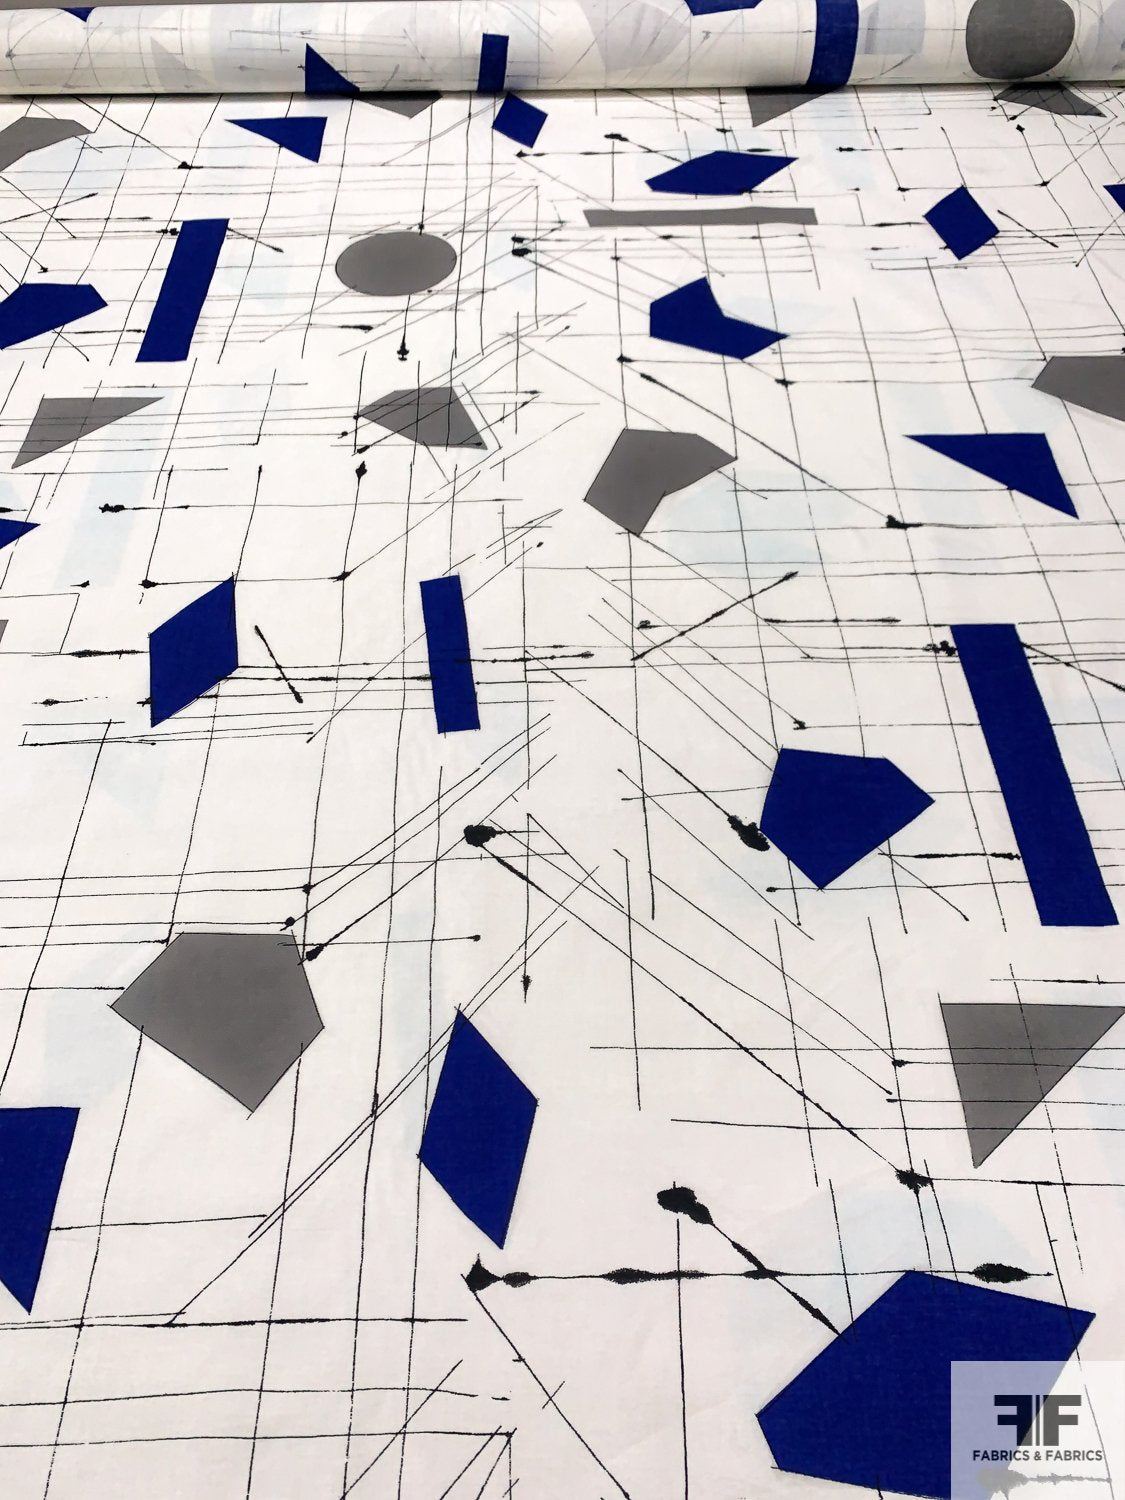 The Architect's Geometric Sketch Printed Cotton Lawn - White / Royal Blue / Grey / Black